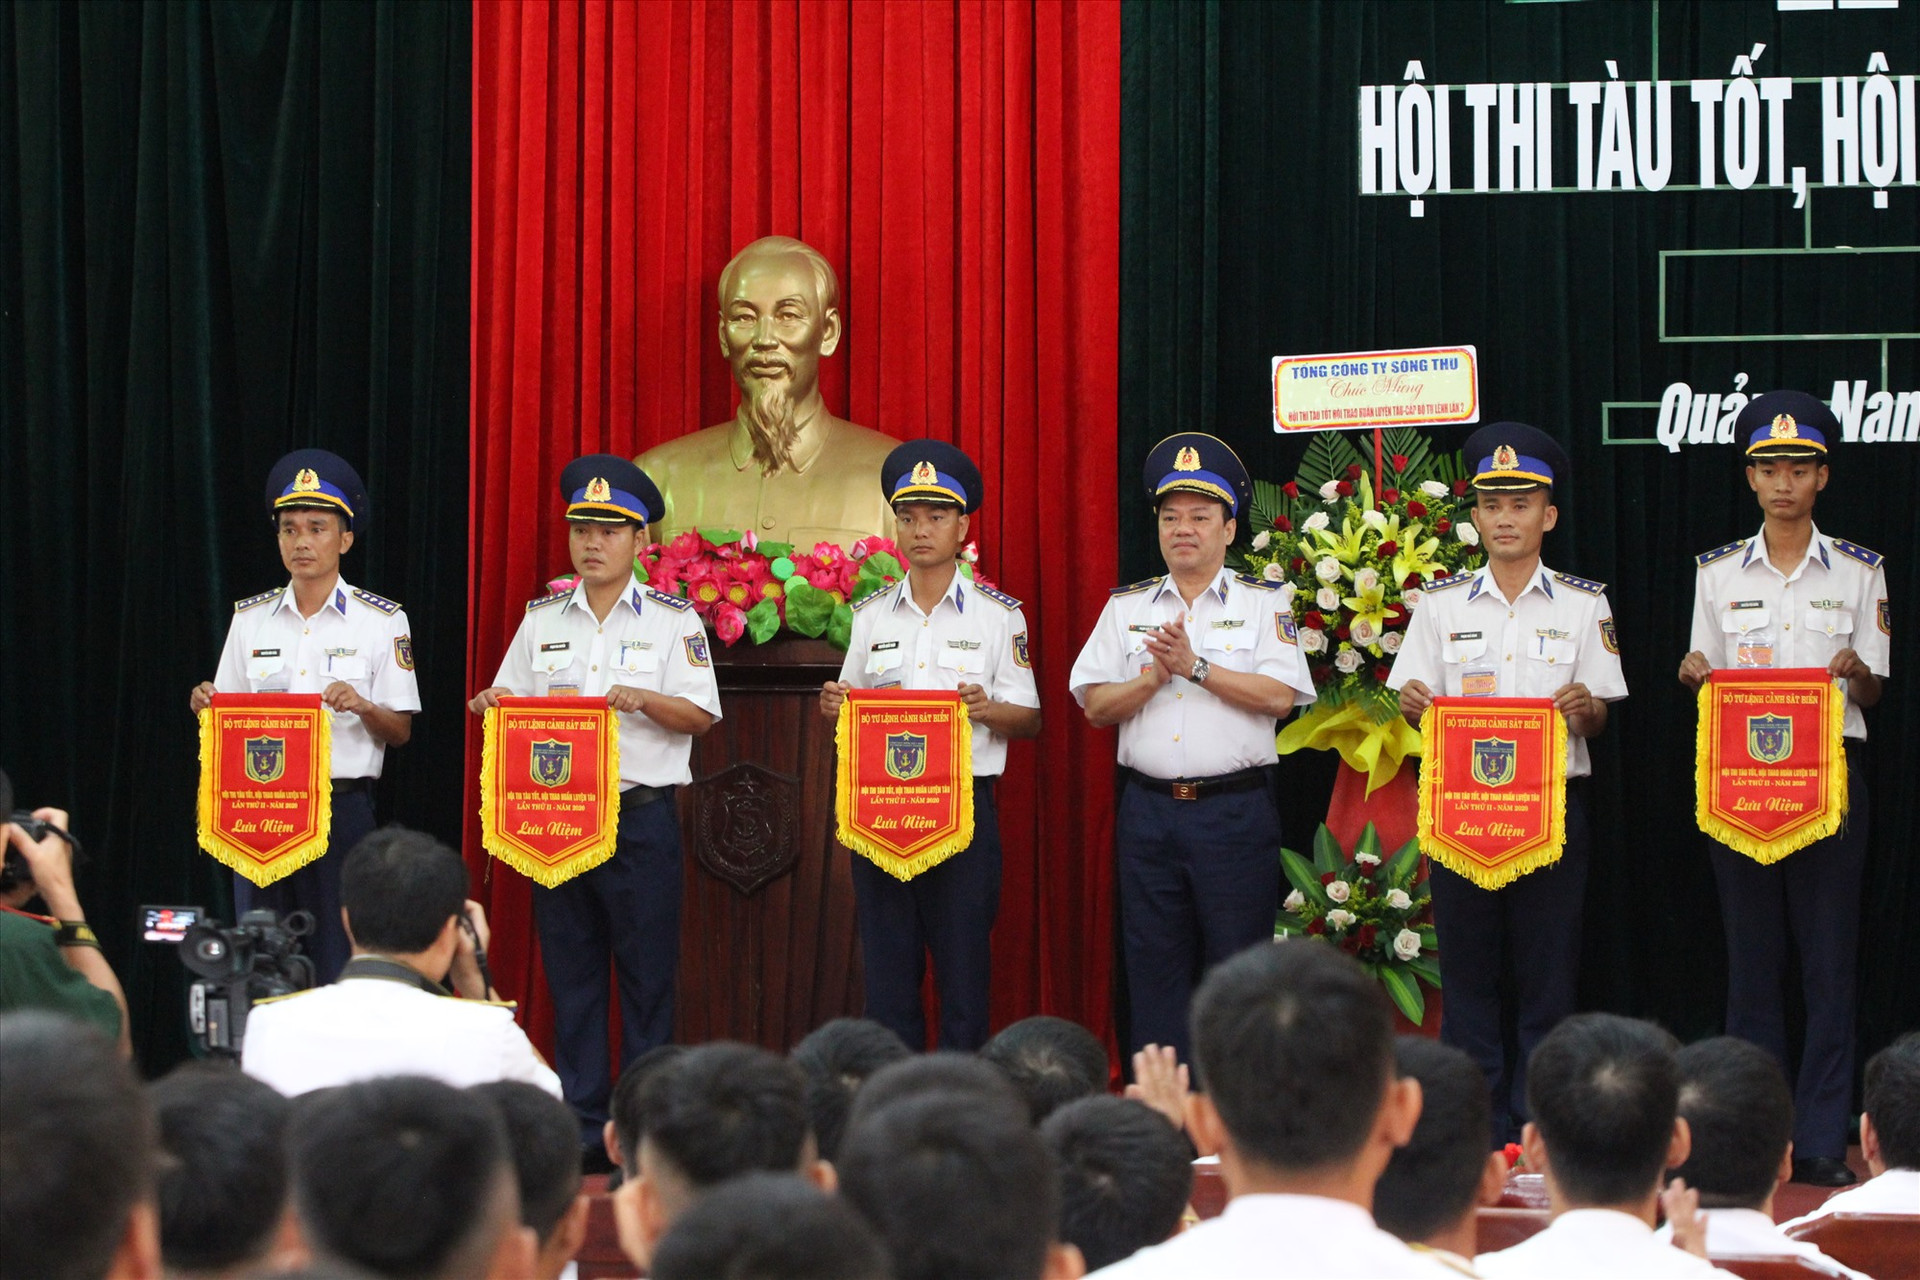 Thiếu tướng Phạm Kim Hậu - Phó tư lệnh, Tham mưu trưởng Cảnh sát biển Việt Nam trao cờ cho các đội thi. Ảnh: T.C